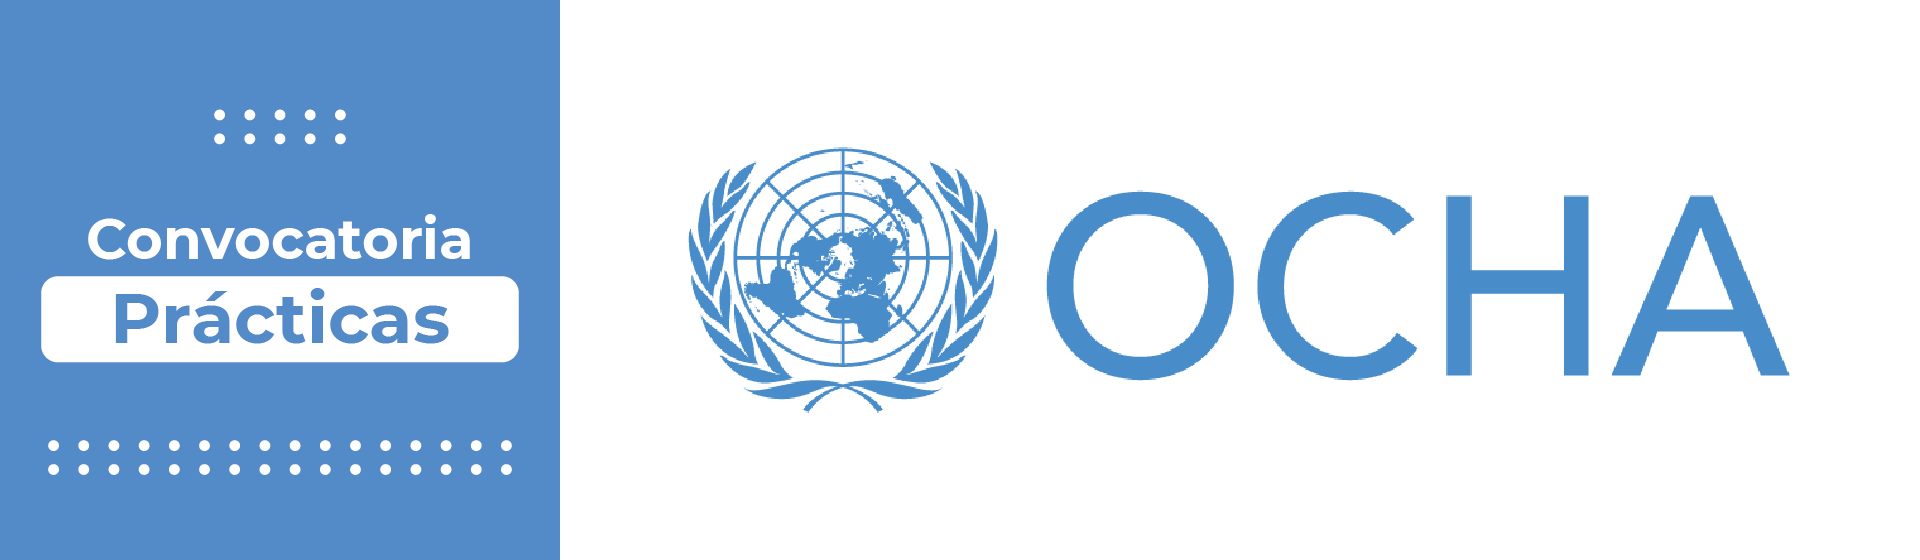 Oficina para la Coordinación de Asuntos Humanitarios - OCHA 